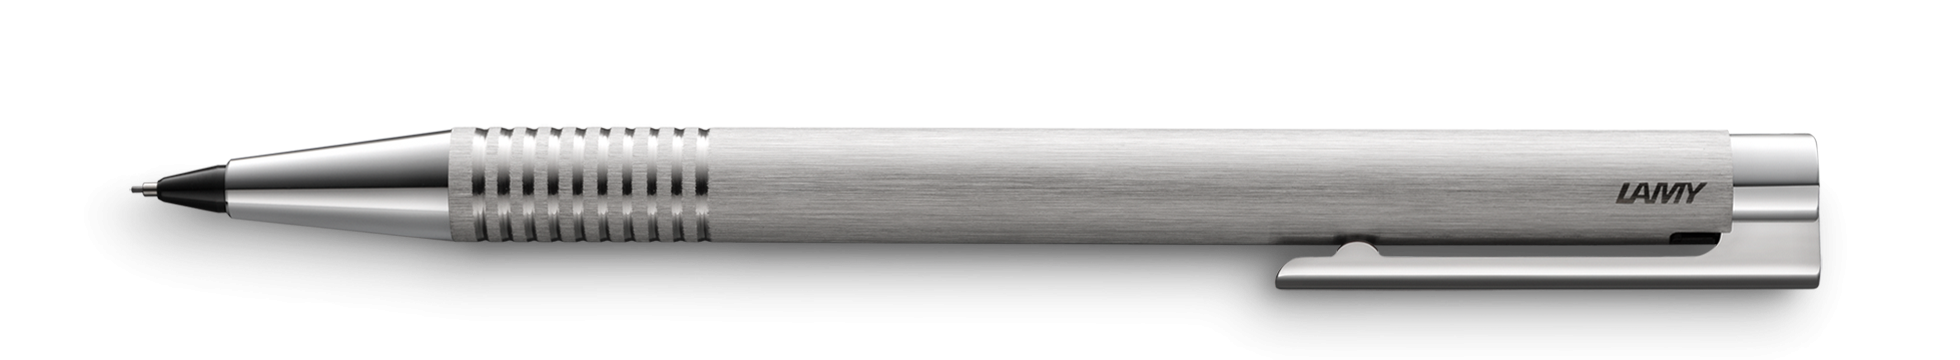 [이벤트] 로고 샤프 브러쉬드 스틸 0.5mm